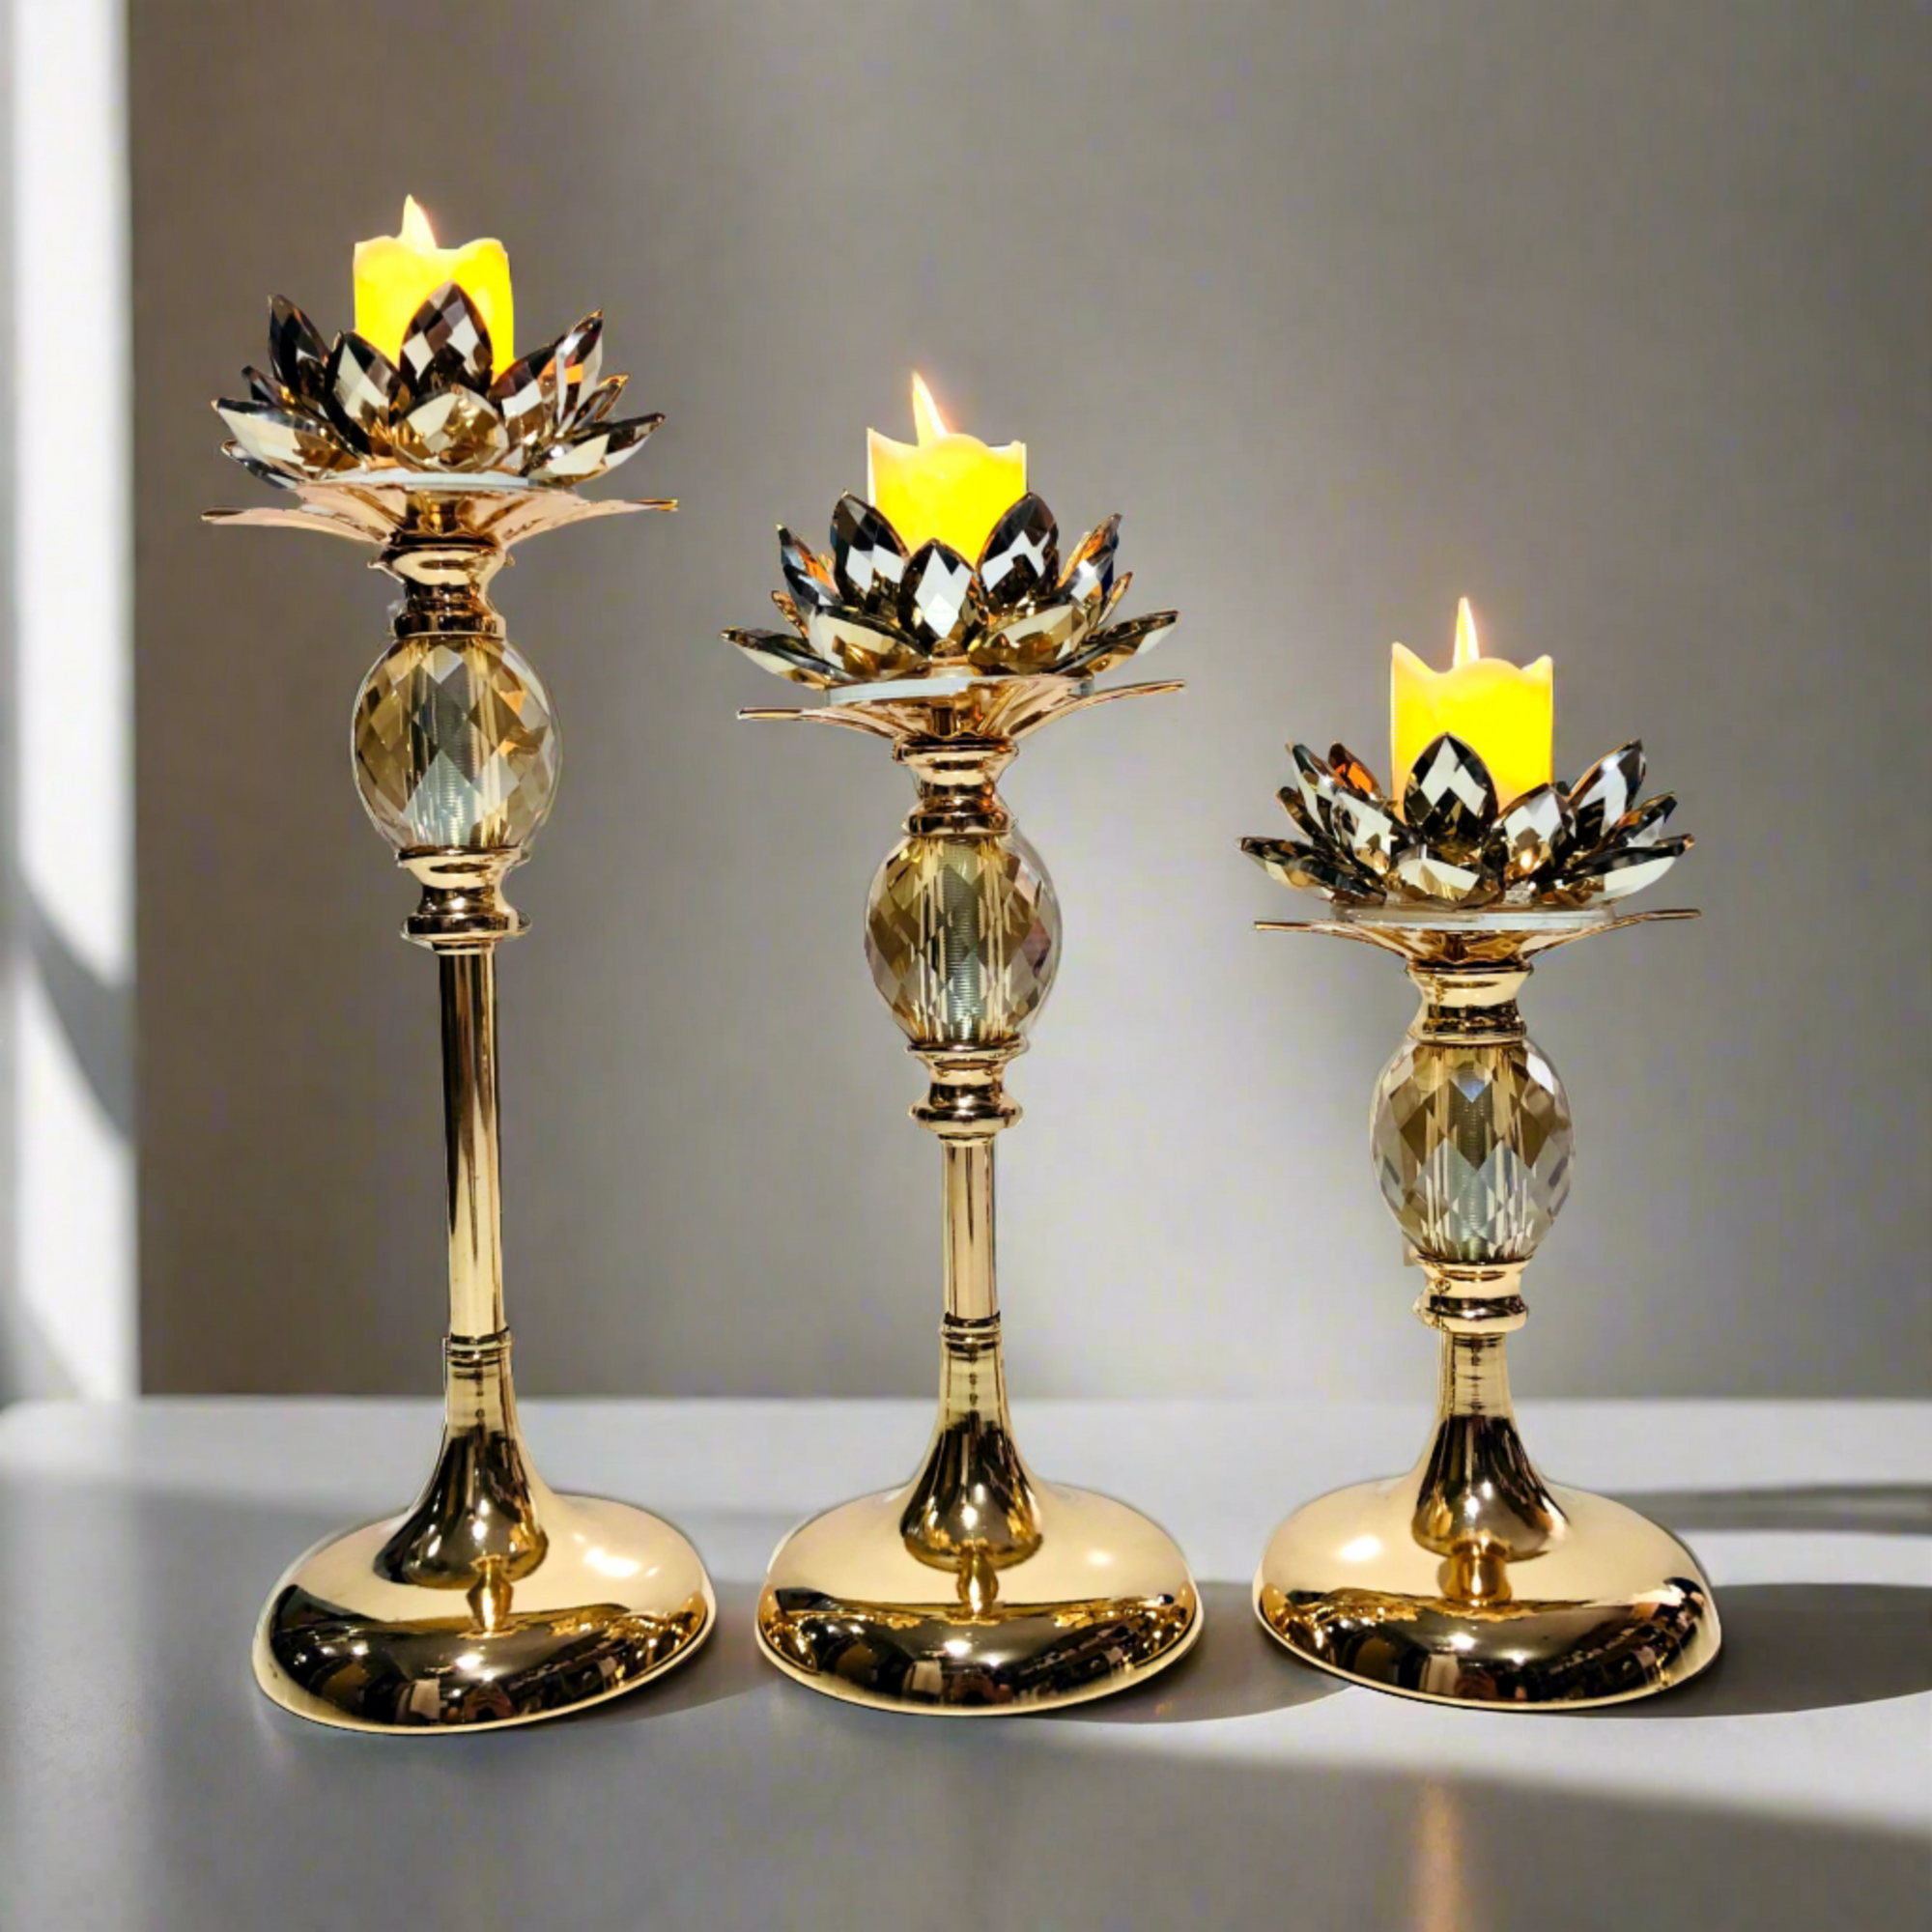 Golden Crystal Bar Design Candle Holder